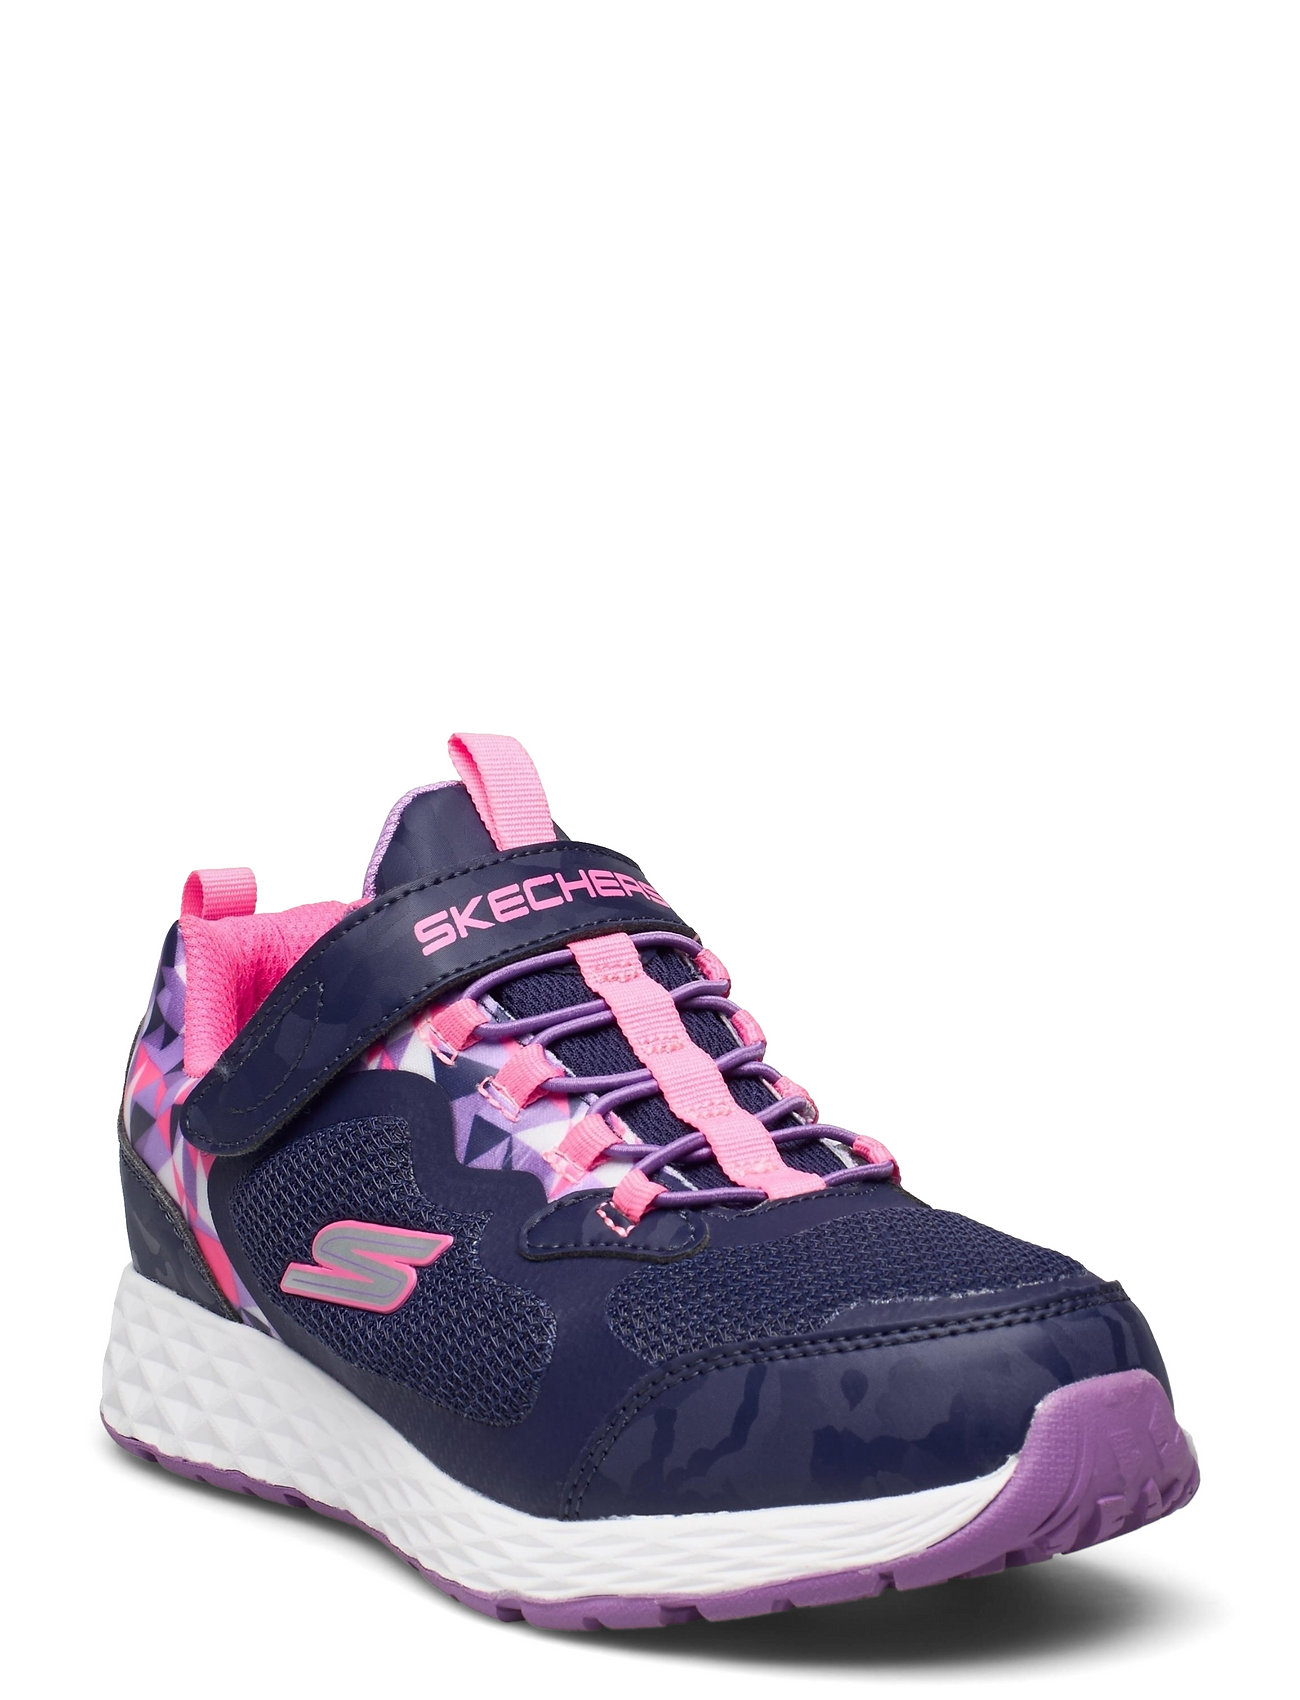 Girls Treas Lite - Waterproof Låga Sneakers Pink Skechers